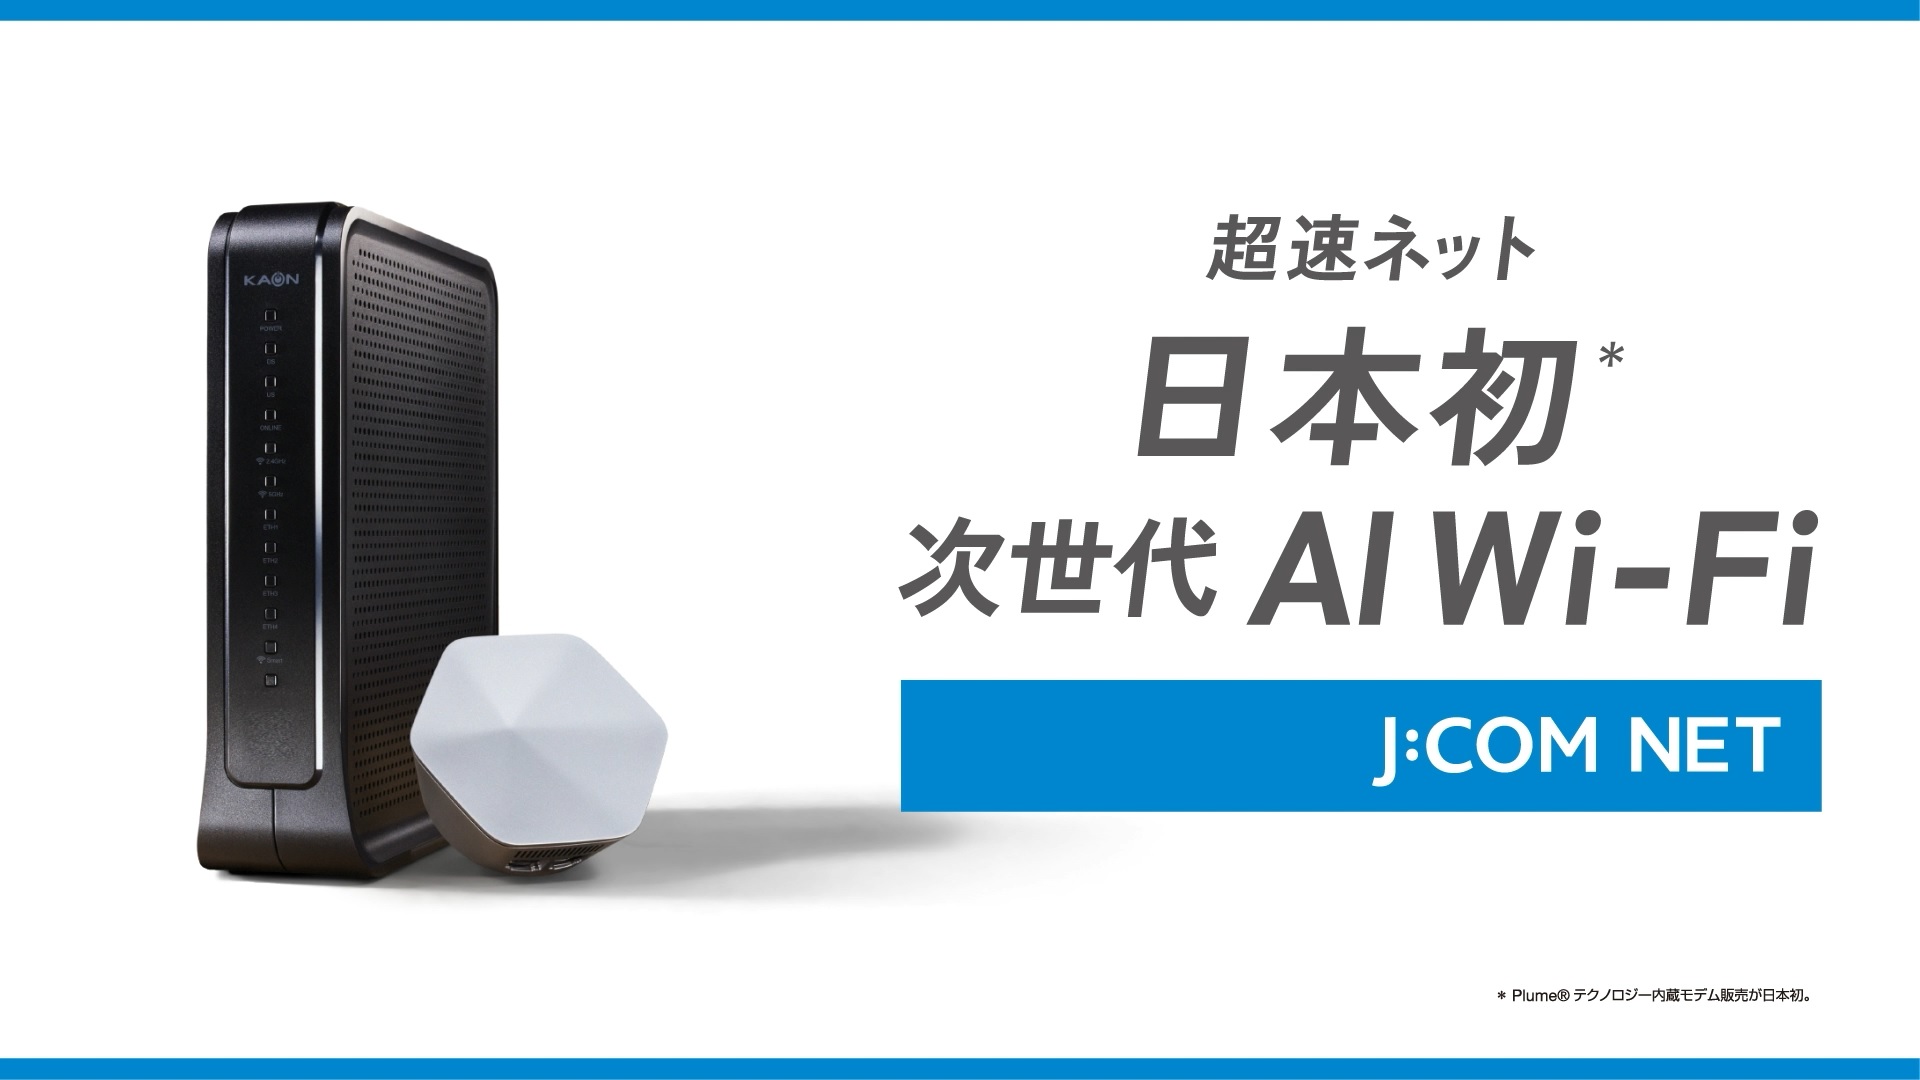 Internet super rápida com Wi-Fi de IA da próxima geração, pela primeira vez no Japão